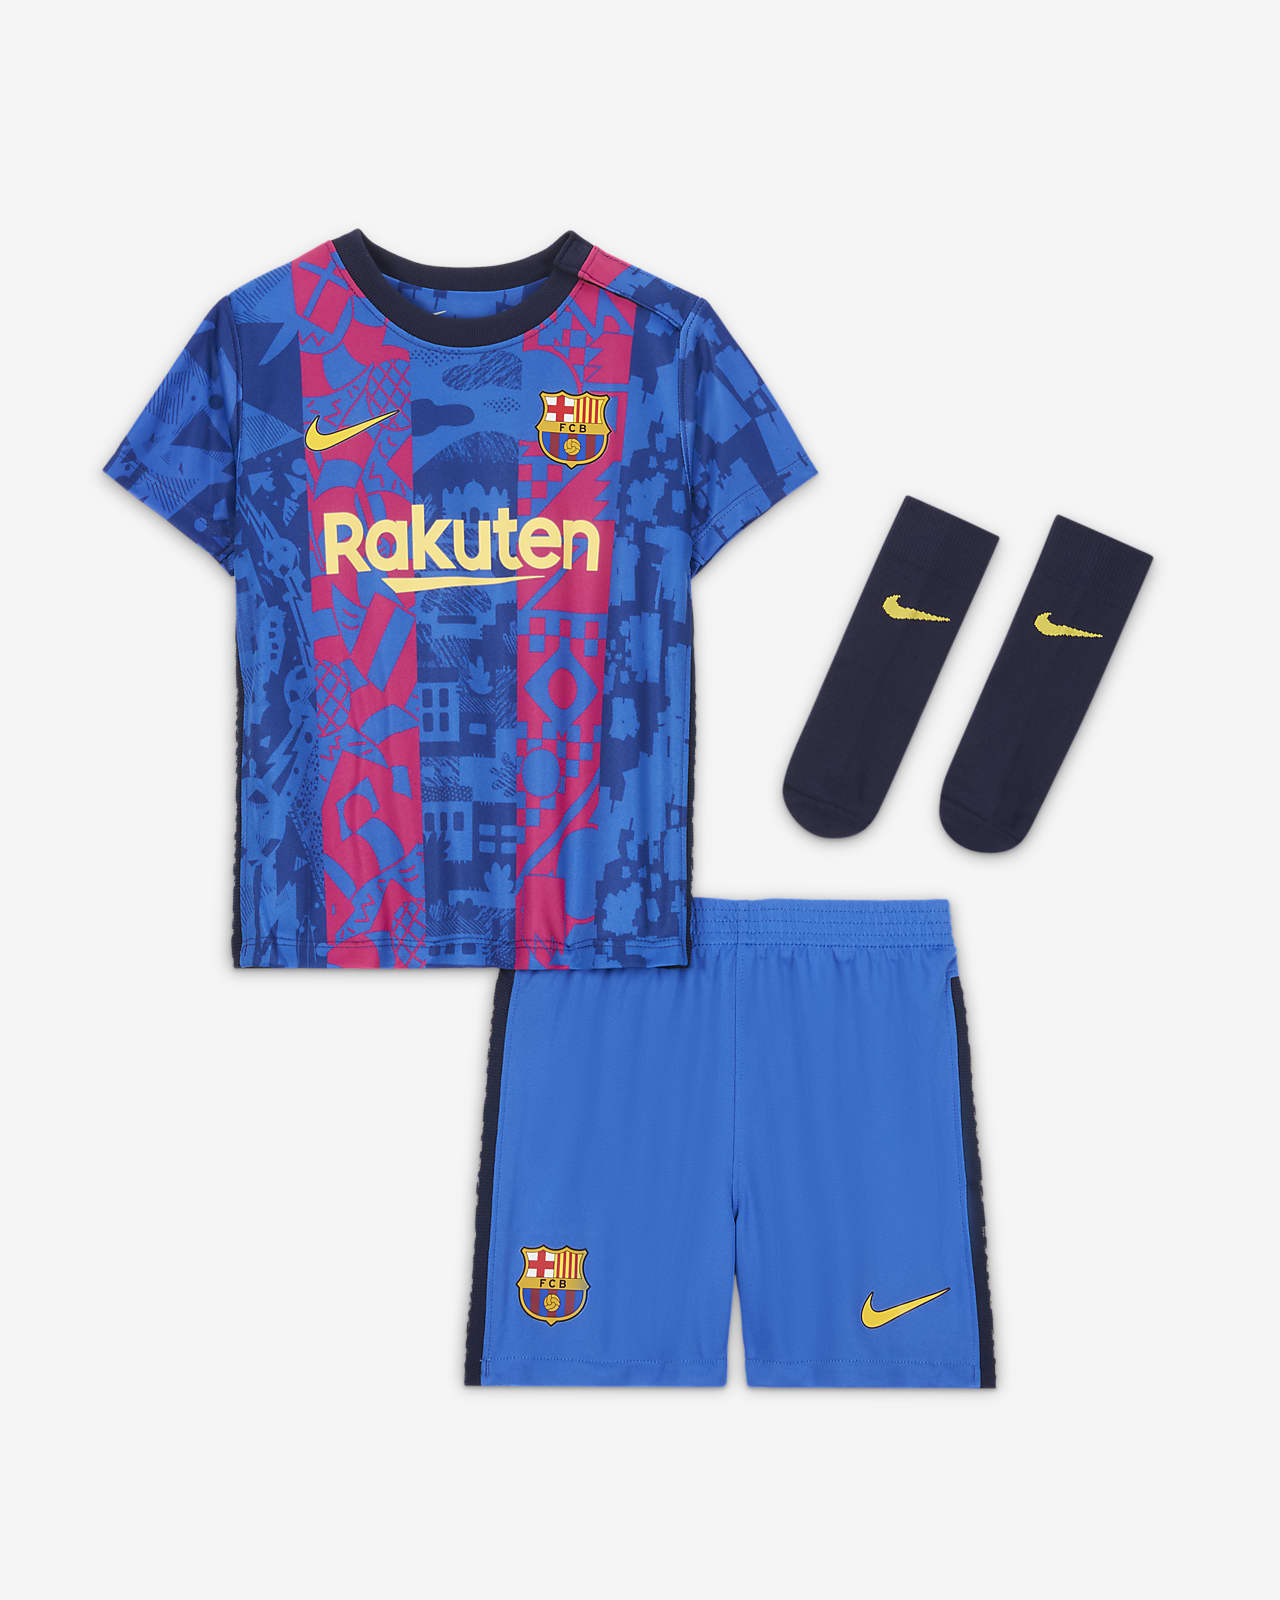 del FC Barcelona alternativo 2021/22 para e infantil. Nike.com